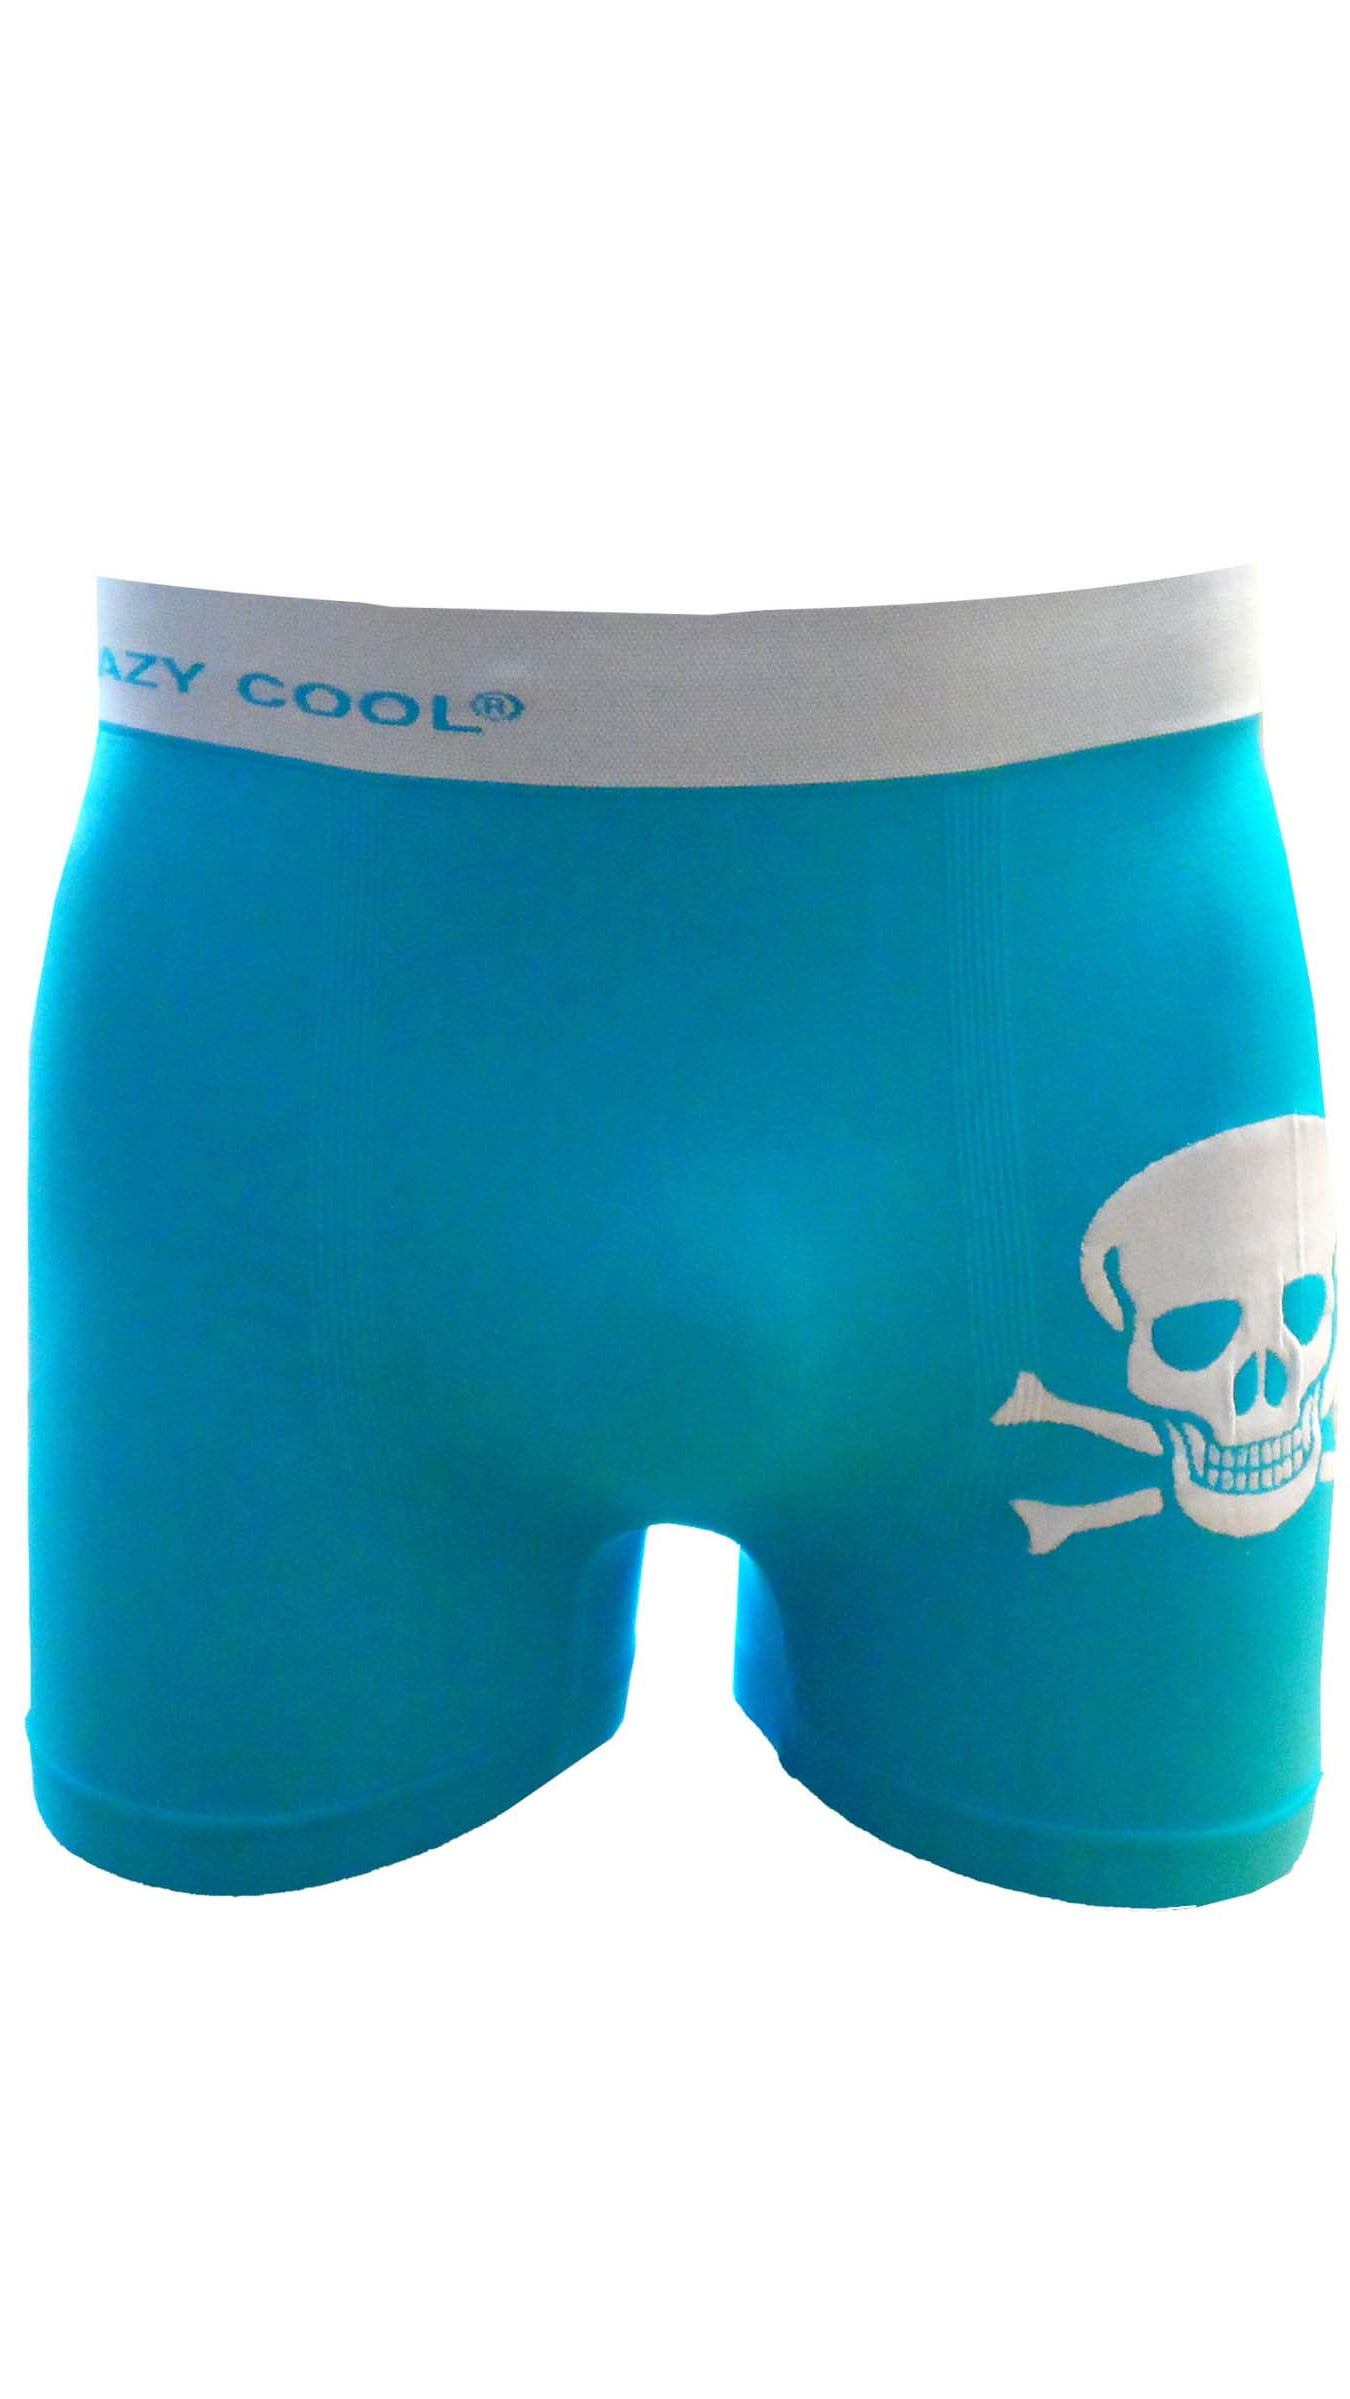 Crazy Cool Underwear® Seamless Mens Boxer Briefs Underwear 6-Pack Set Snake